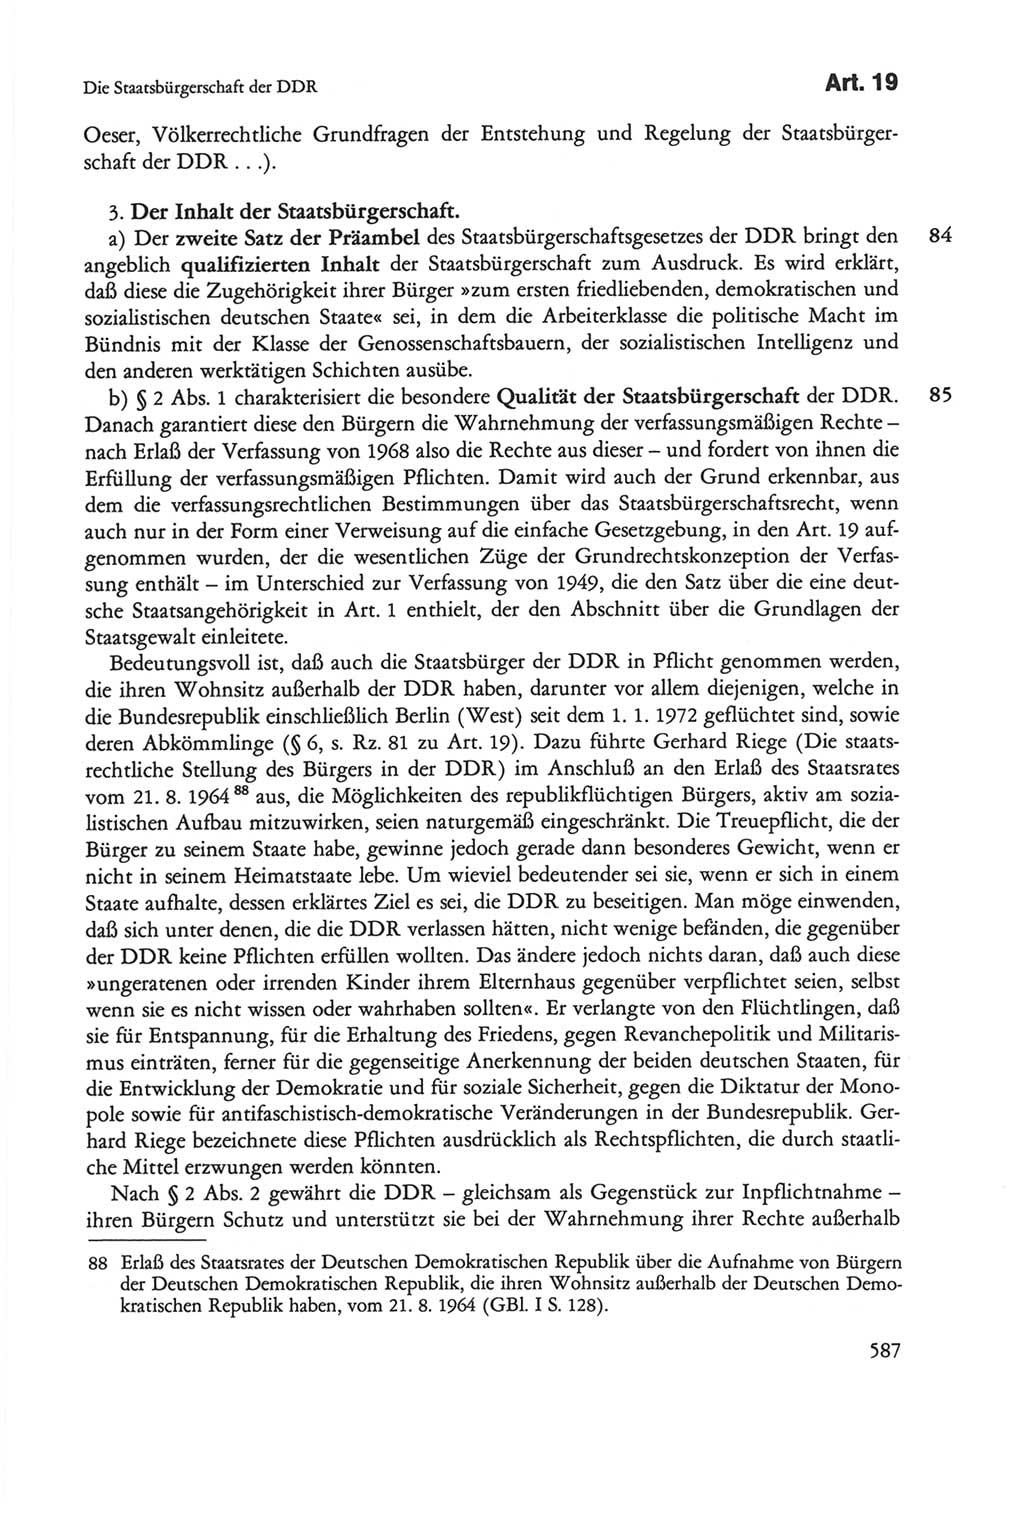 Die sozialistische Verfassung der Deutschen Demokratischen Republik (DDR), Kommentar mit einem Nachtrag 1997, Seite 587 (Soz. Verf. DDR Komm. Nachtr. 1997, S. 587)